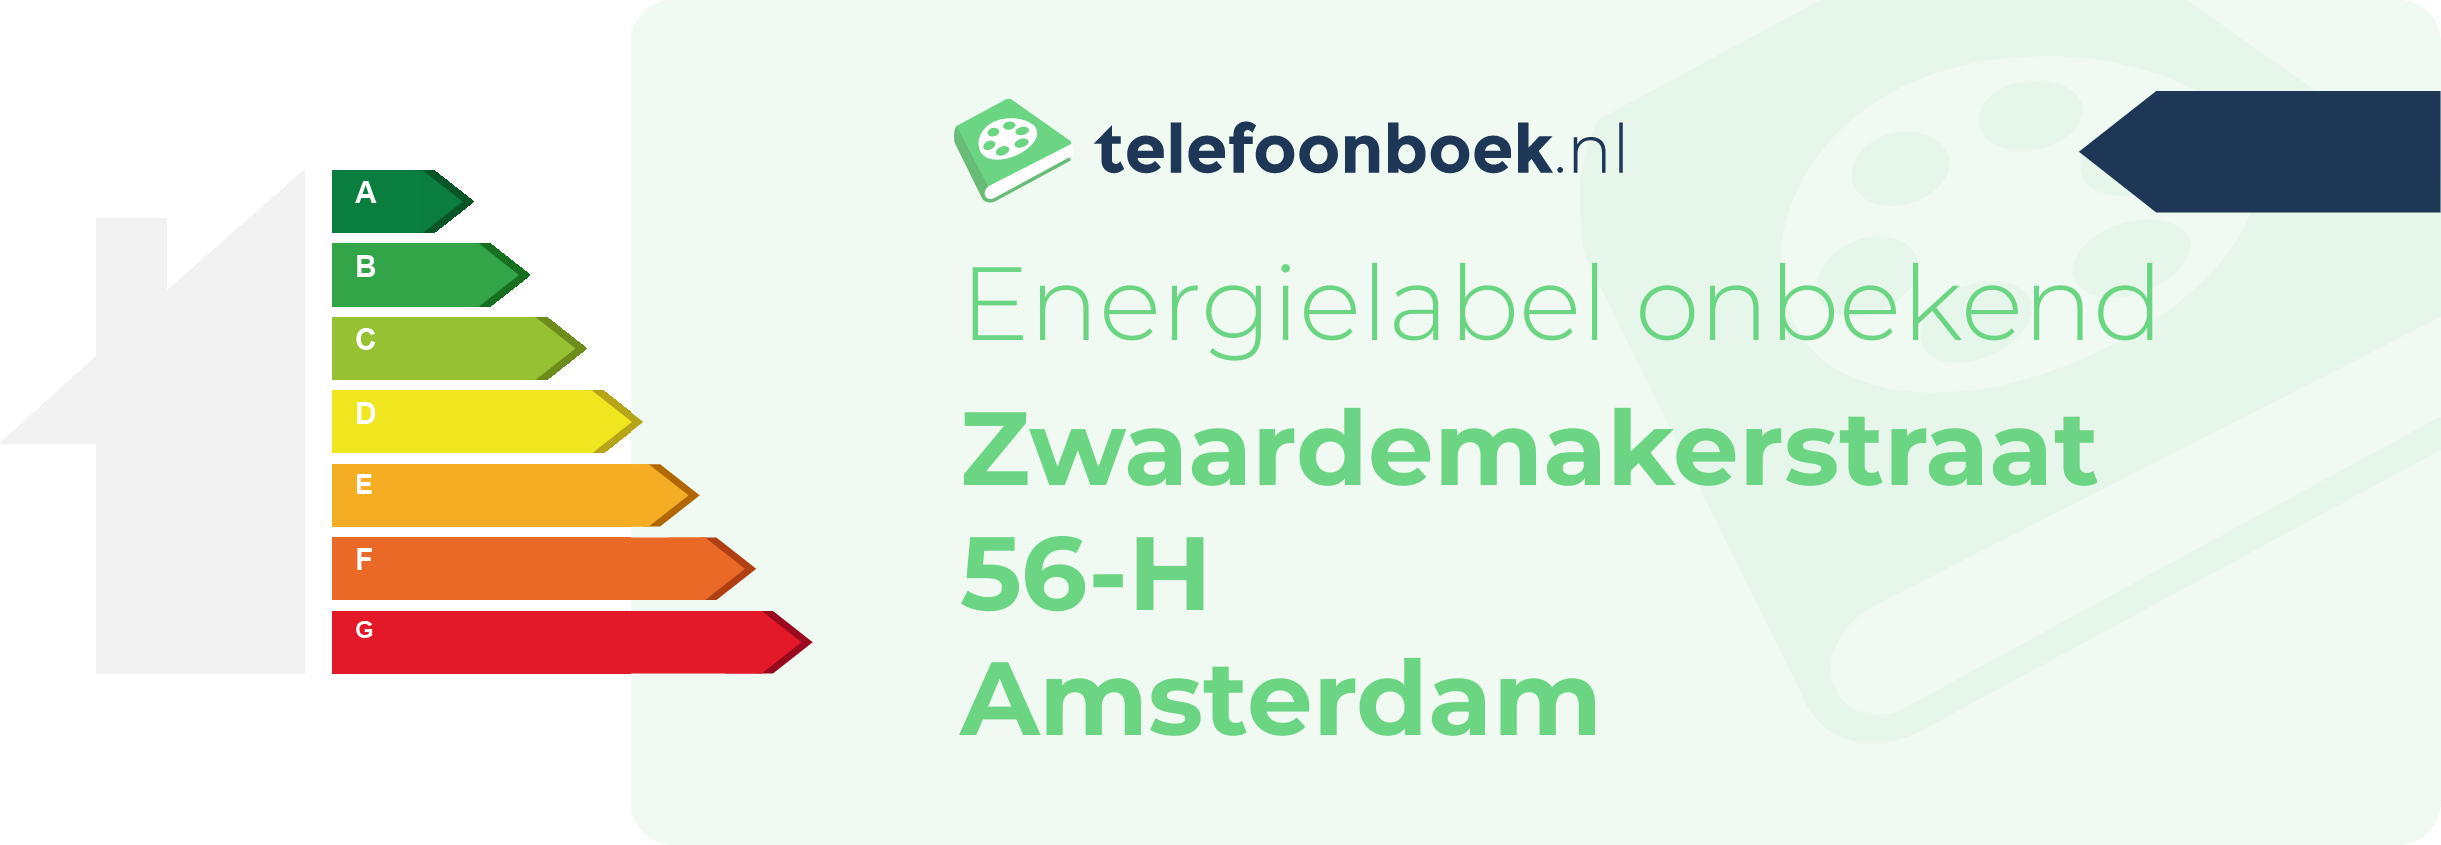 Energielabel Zwaardemakerstraat 56-H Amsterdam